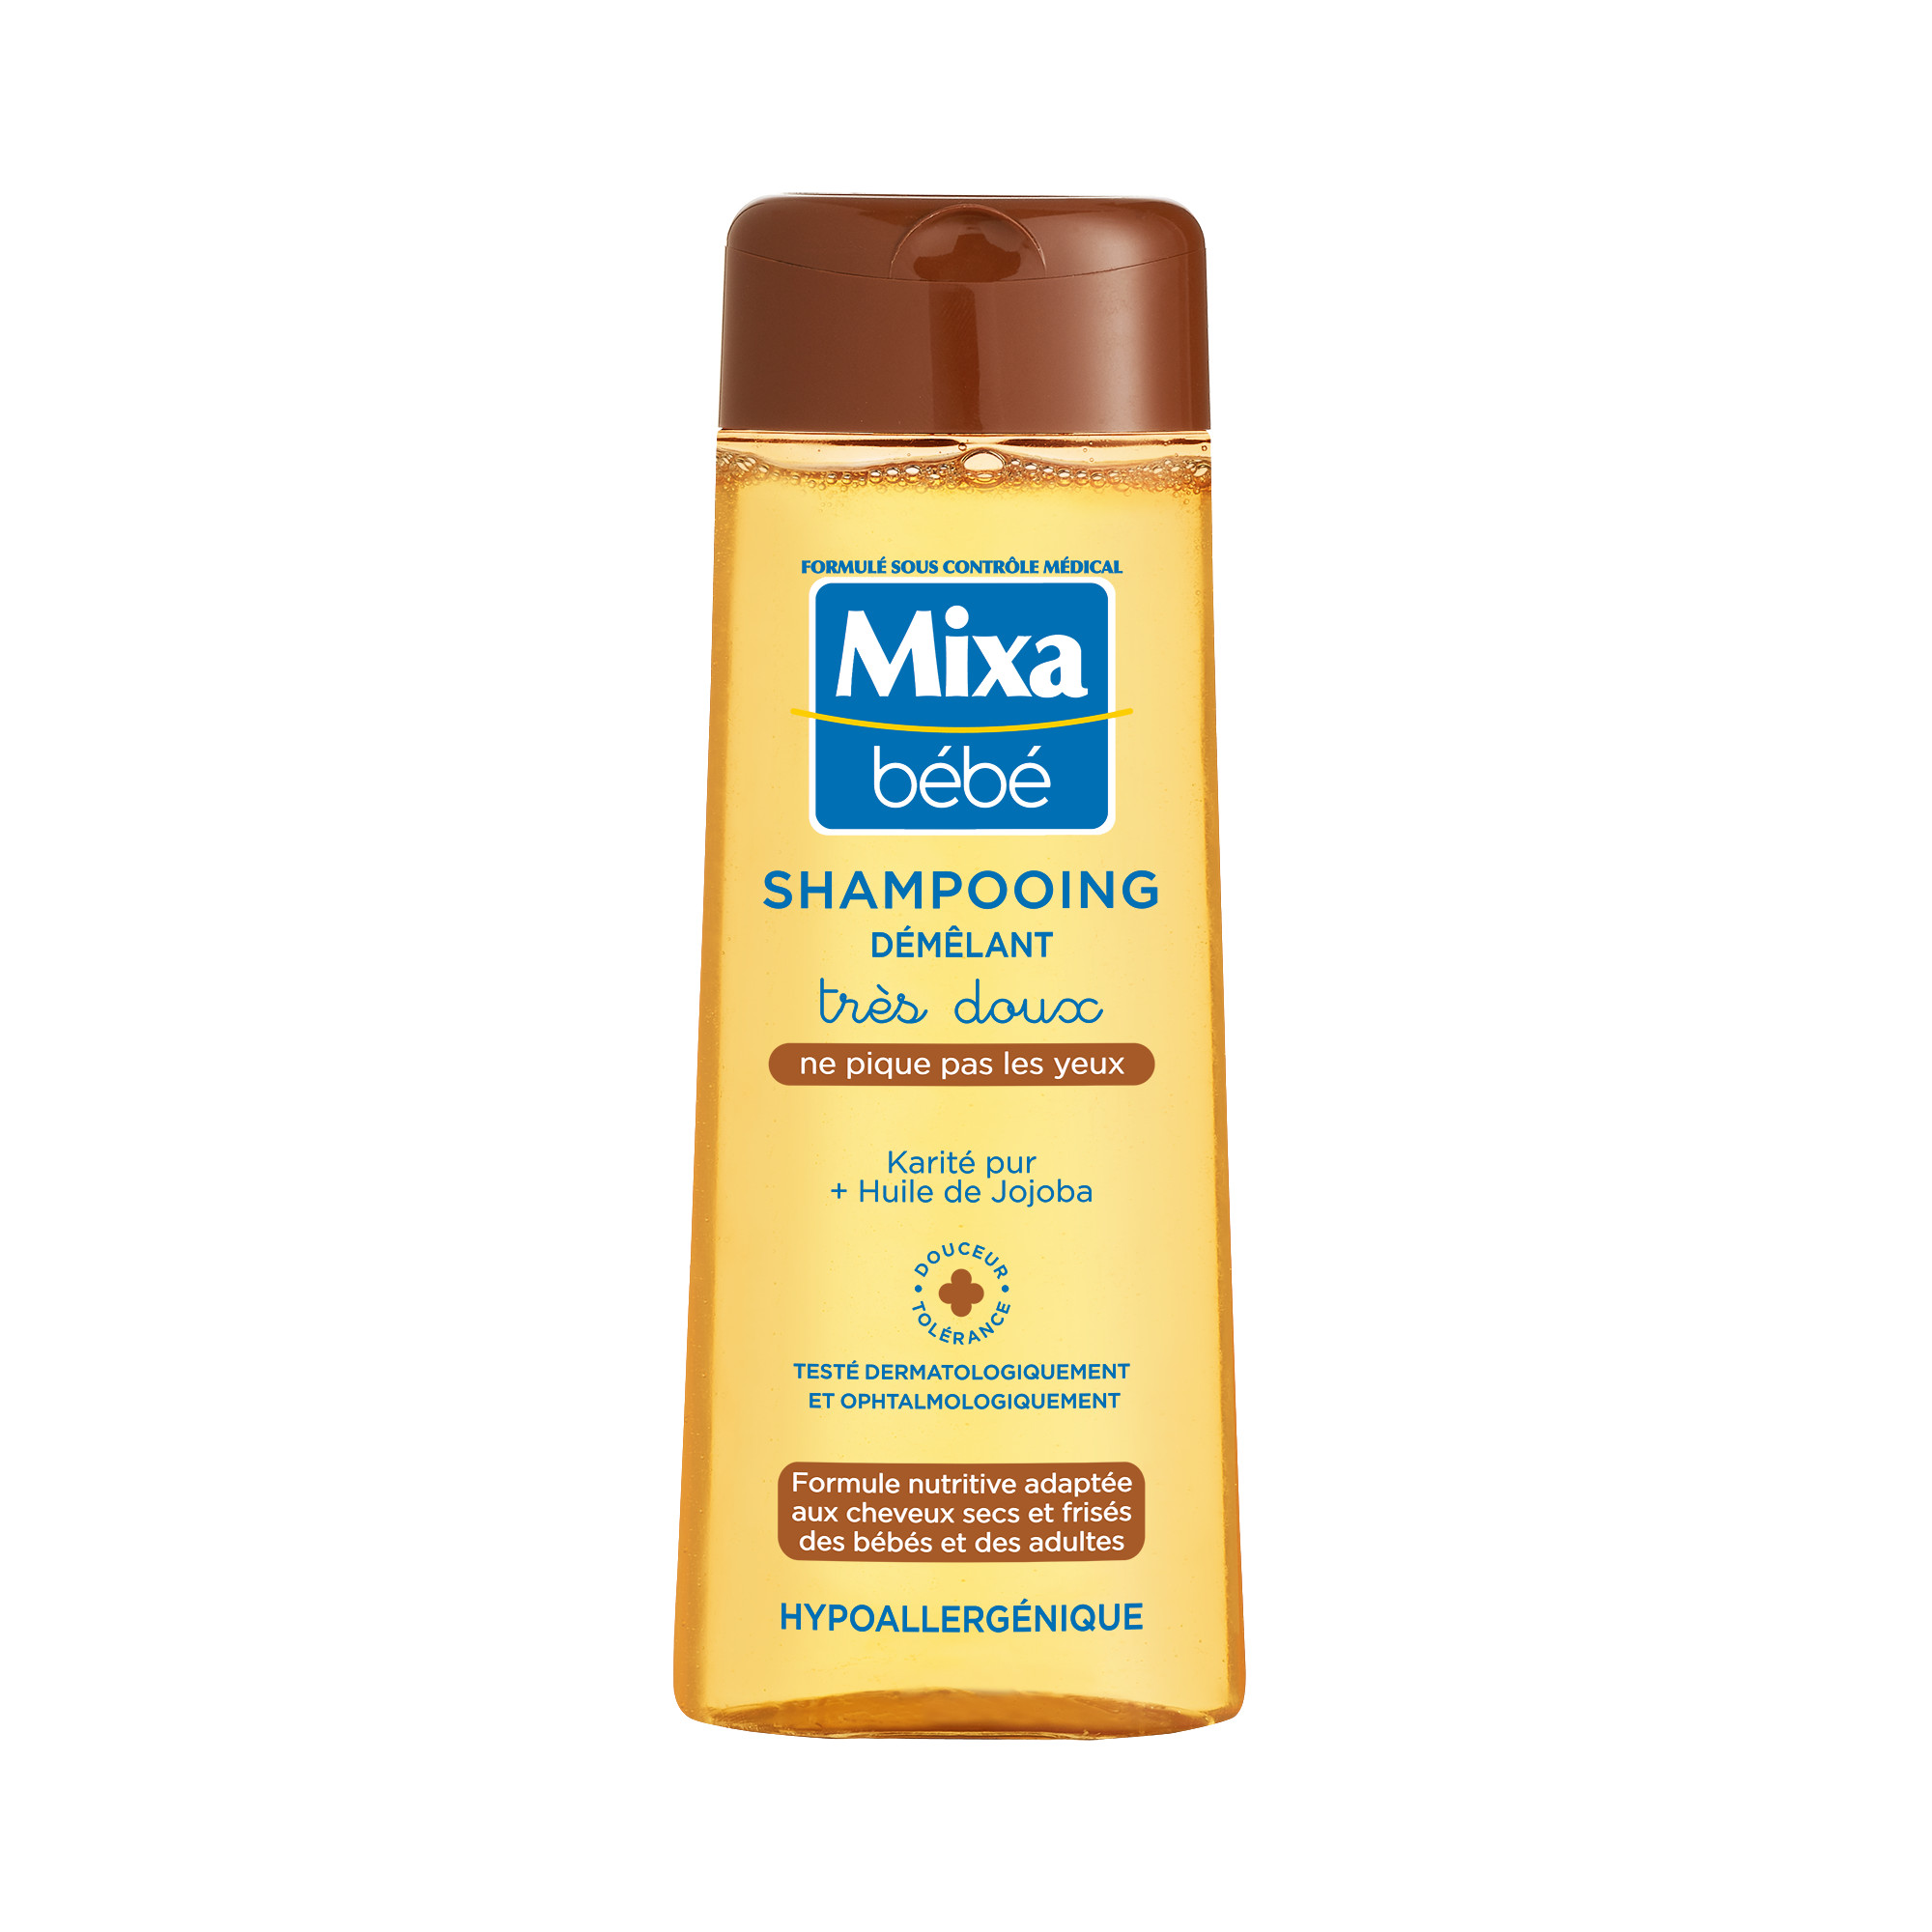 MIXA BEBE Shampooing démêlant hypoallergénique karité pur et huile